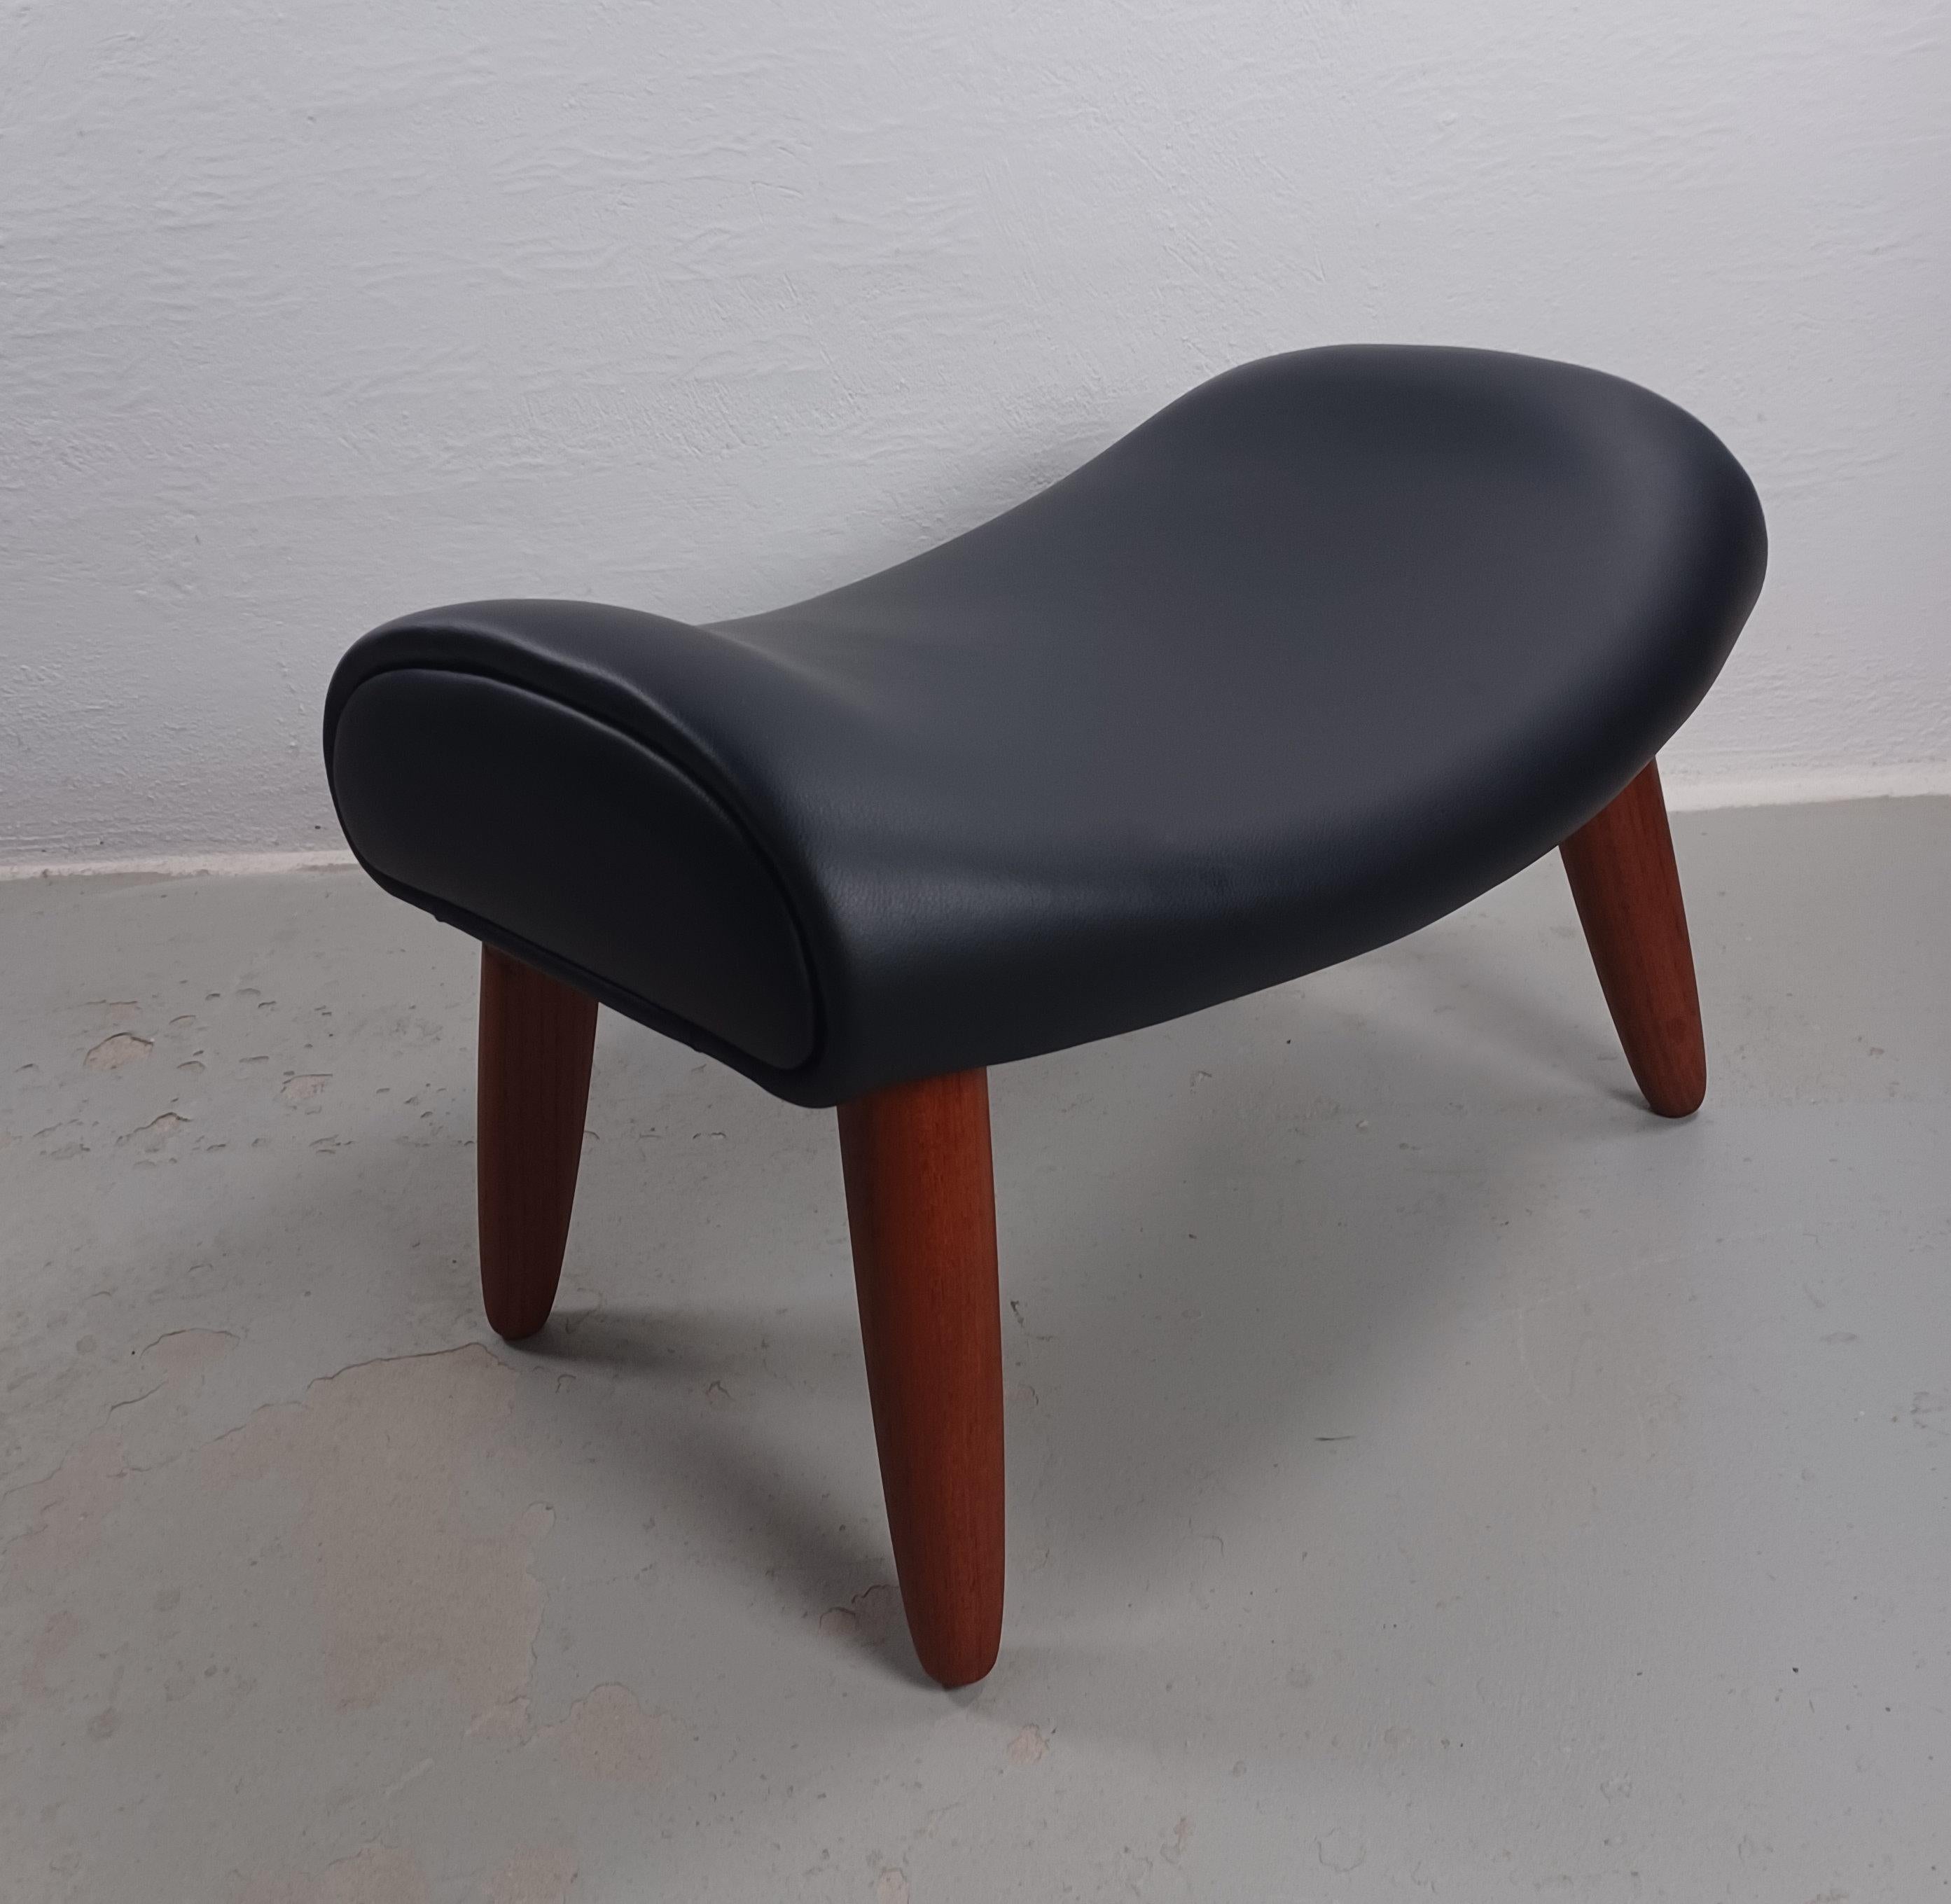 Tabouret danois des années 50 en teck et cuir noir, retapissé

Tabouret danois des années 1960 en teck massif avec une élégante assise incurvée permettant de s'y asseoir confortablement si nécessaire.

Le pouf a été entièrement restauré par notre